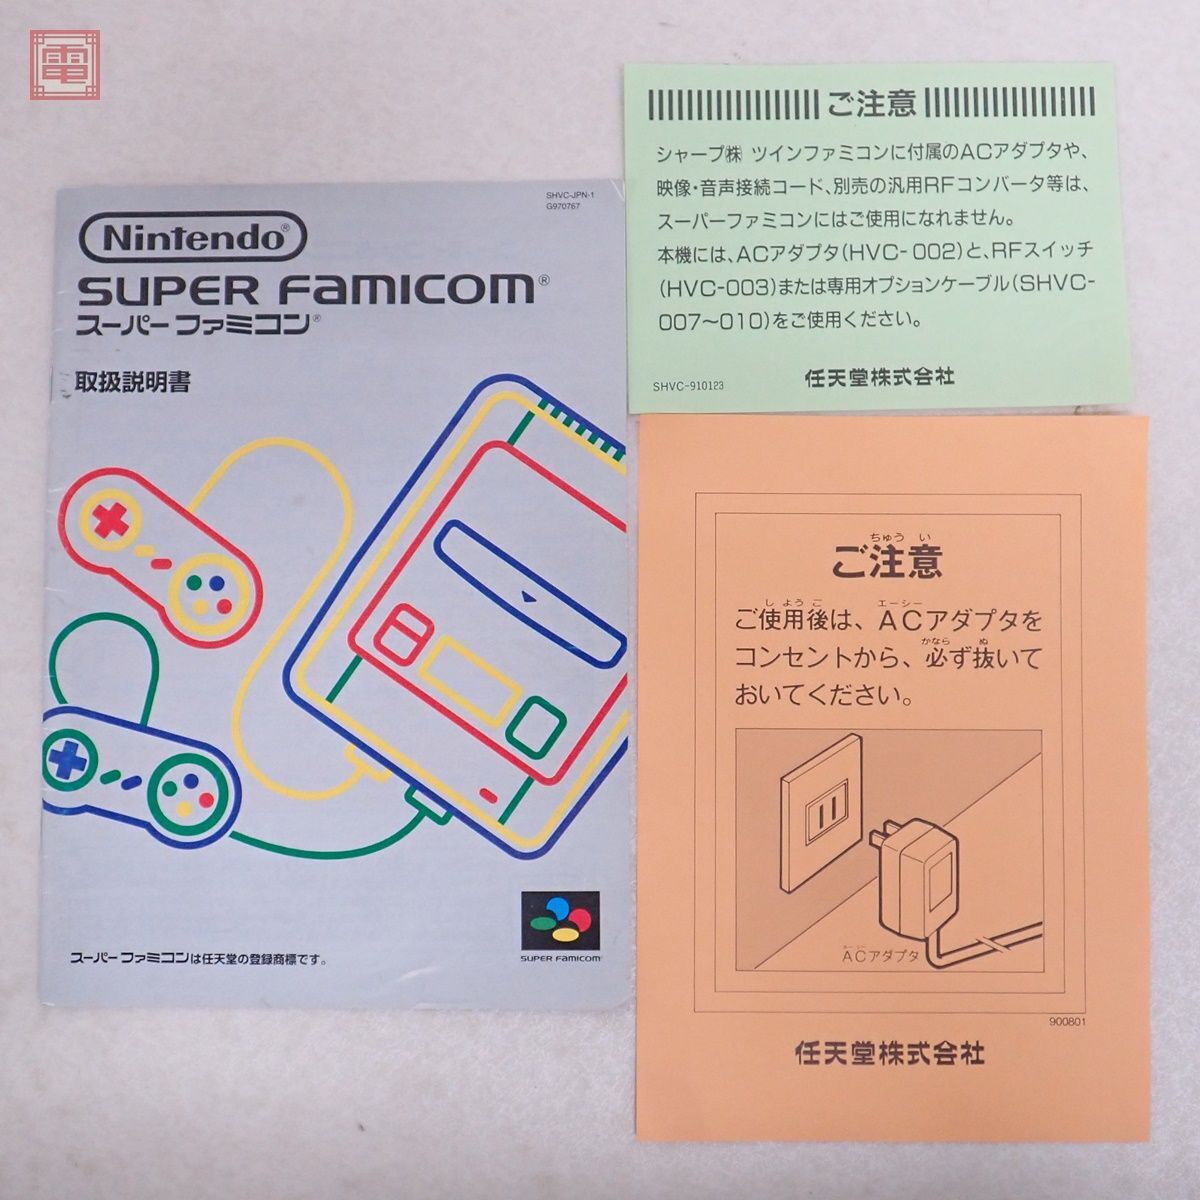  operation goods superior article serial coincidence SFC Hsu fami Super Famicom body nintendo Nintendo box opinion attaching [20